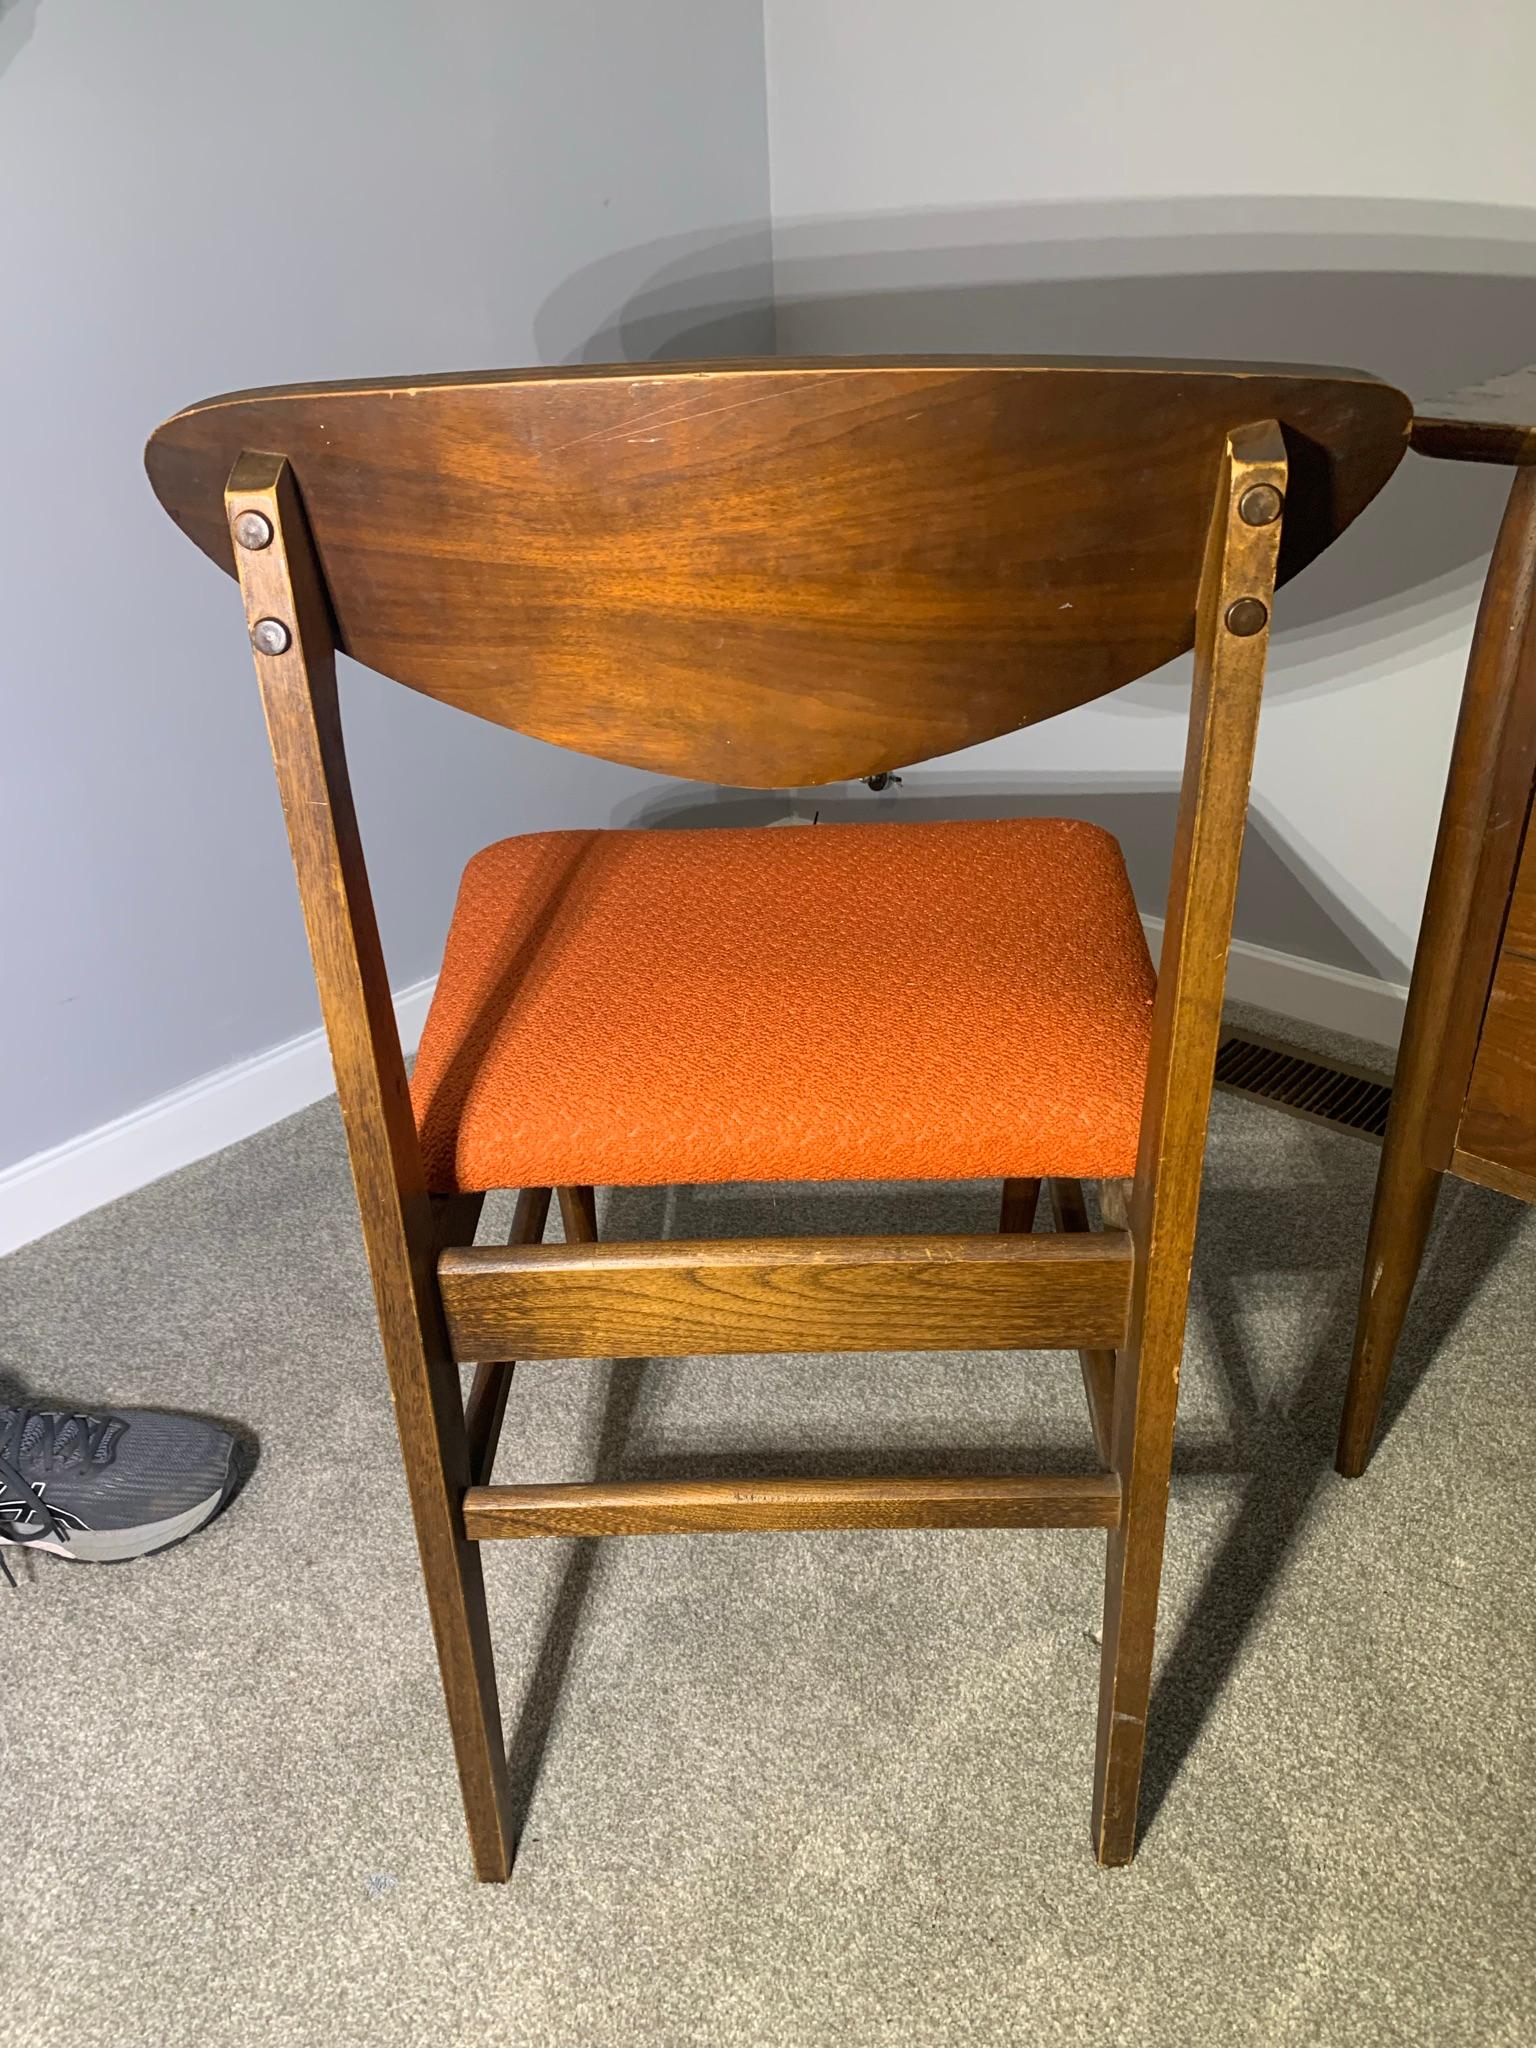 Bassett Furniture MCM Desk & Chair